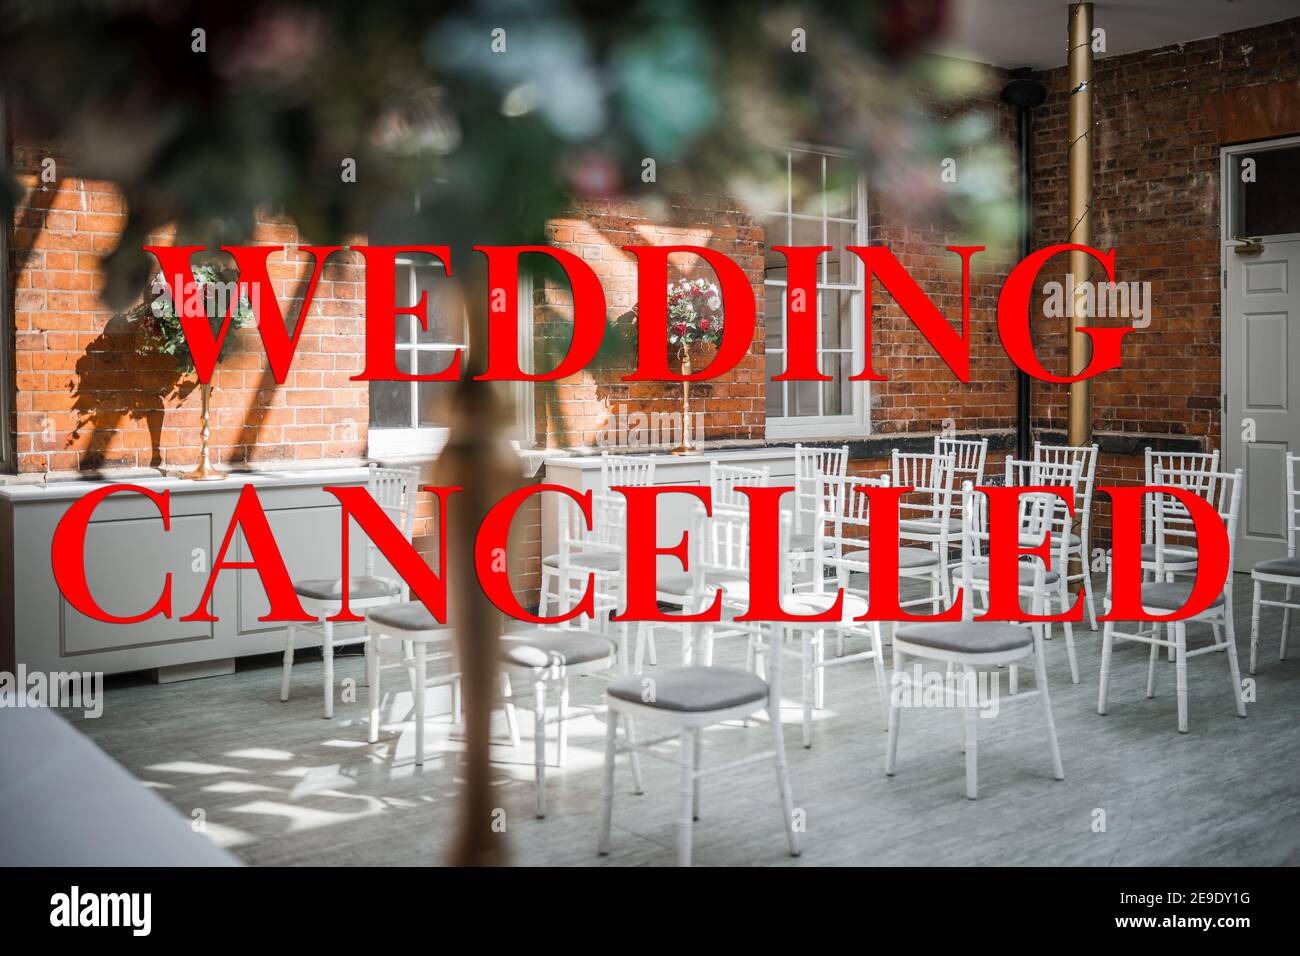 Hochzeit abgesagt wegen Covid 19 Pandemie Sperrbeschränkungen rot Text und Bild des Trauungsraumes hinter leer schreiben Stühle keine Gäste Stockfoto